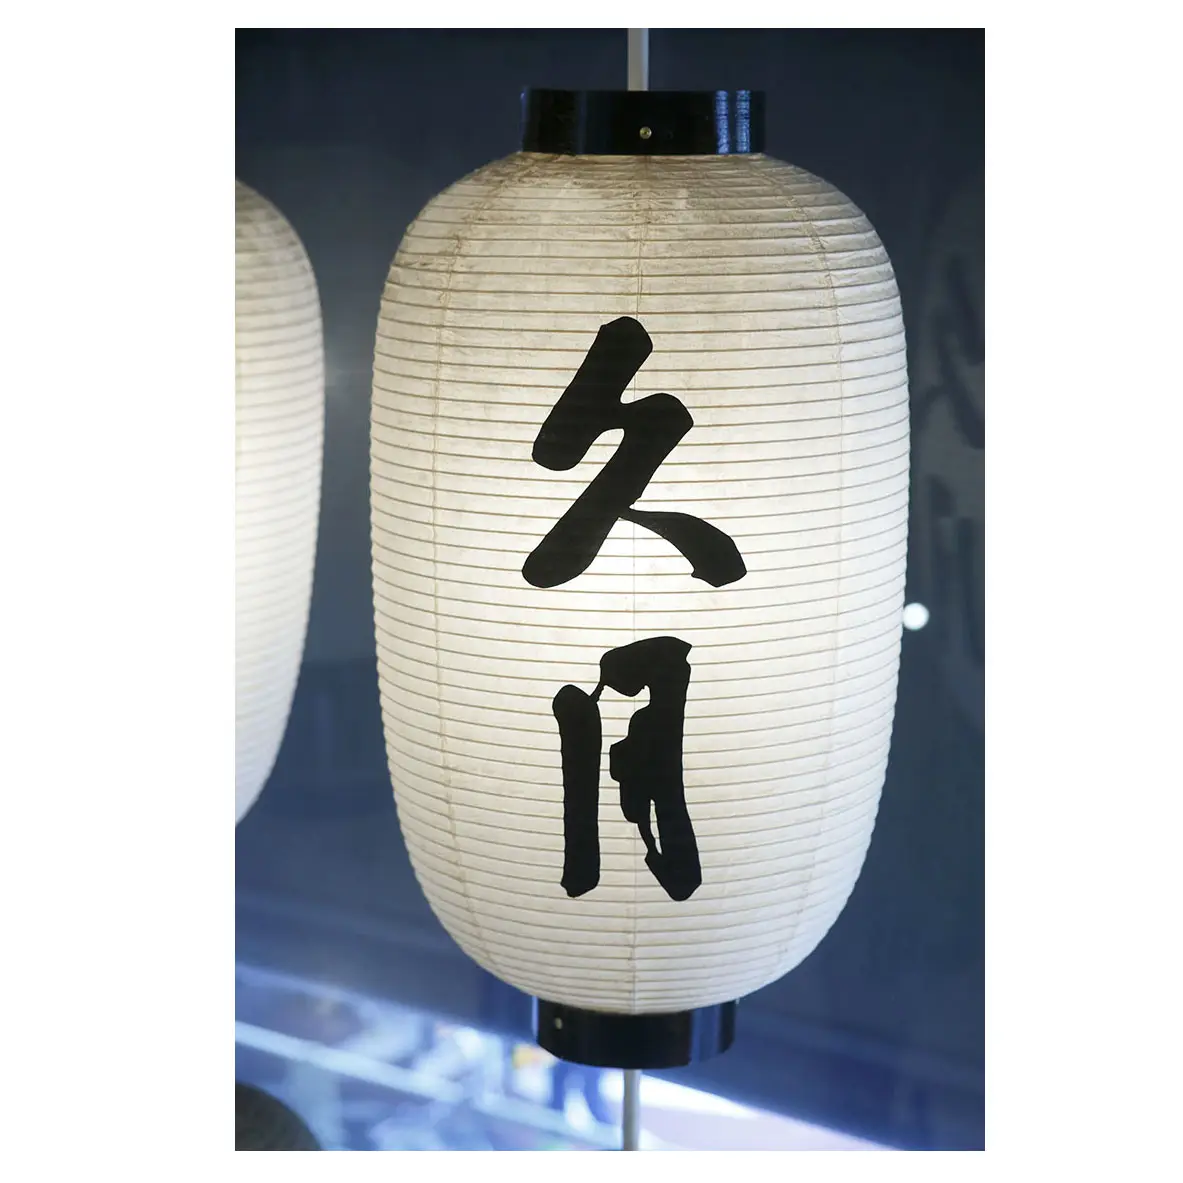 الجملة اليابانية التقليدية في الهواء الطلق ضوء فانوس في المهرجانات